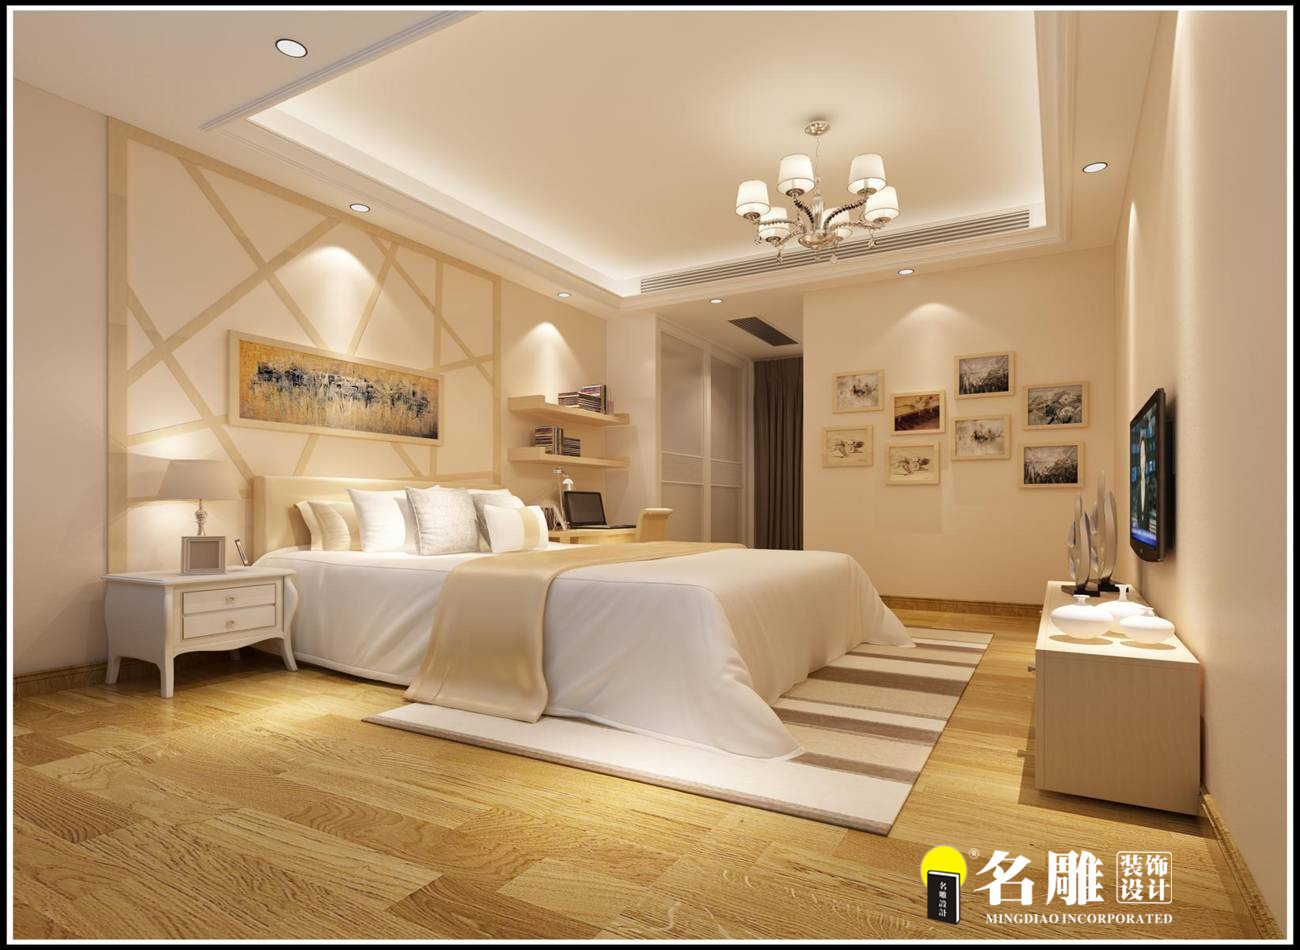 简欧中式 四居室 贵气 流畅的线条 卧室图片来自名雕装饰长沙分公司在五矿龙湾国际简欧中式四居室的分享